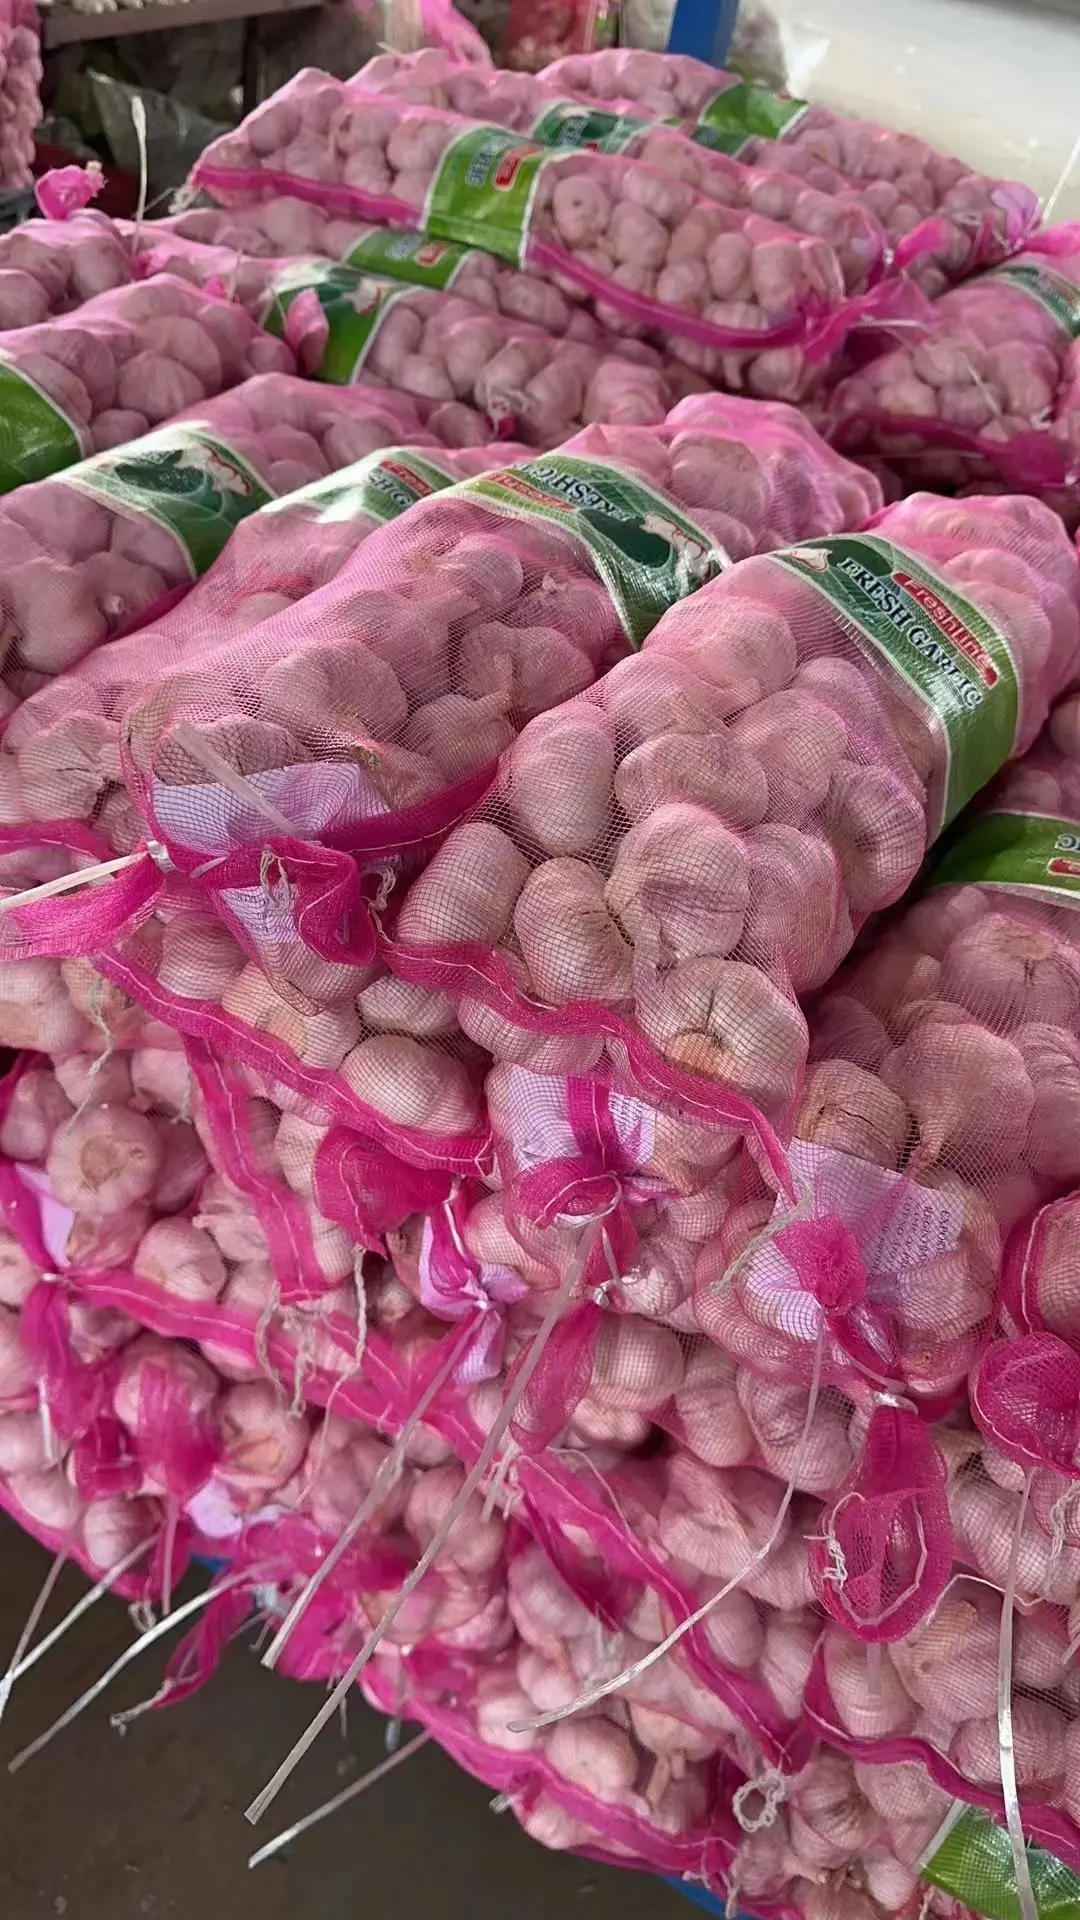 محصول جديد ثوم صيني طازج أحمر أرجواني عادي سعر أجو ألهو جارليك للبيع بالجملة